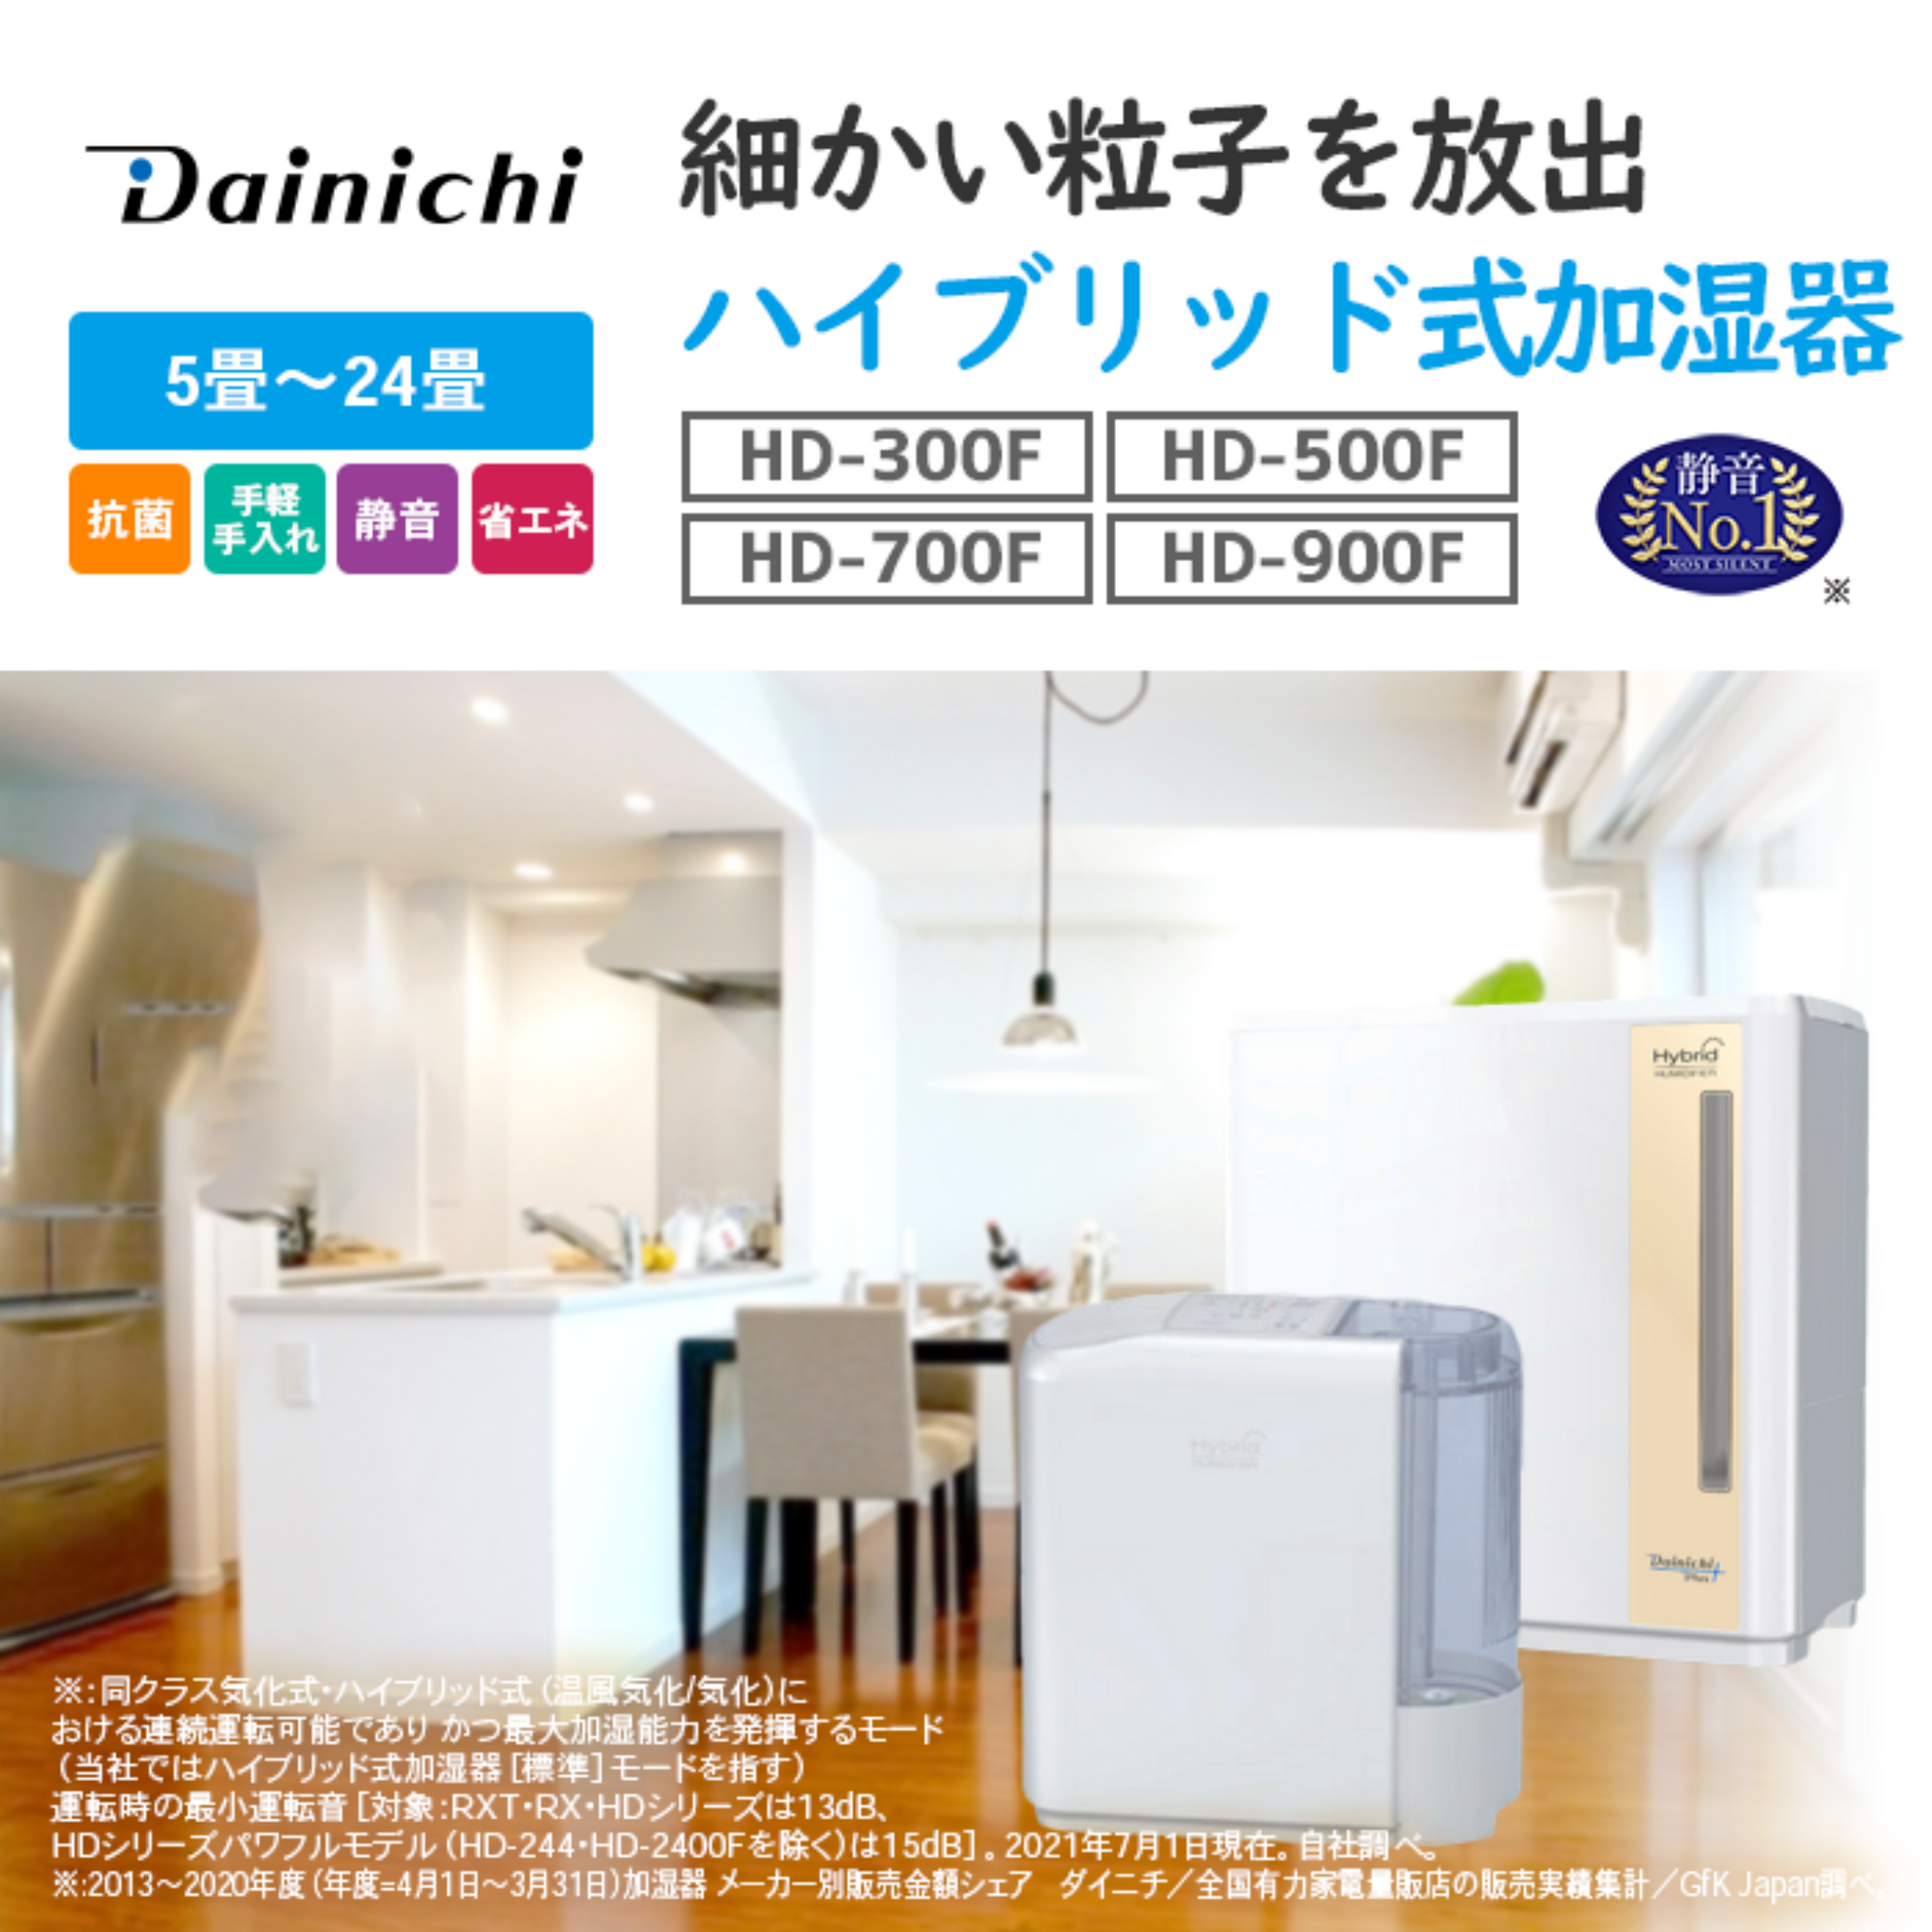 【新品・保証あり】ダイニチ 加湿器 ハイブリッド式 ホワイト HD-300F